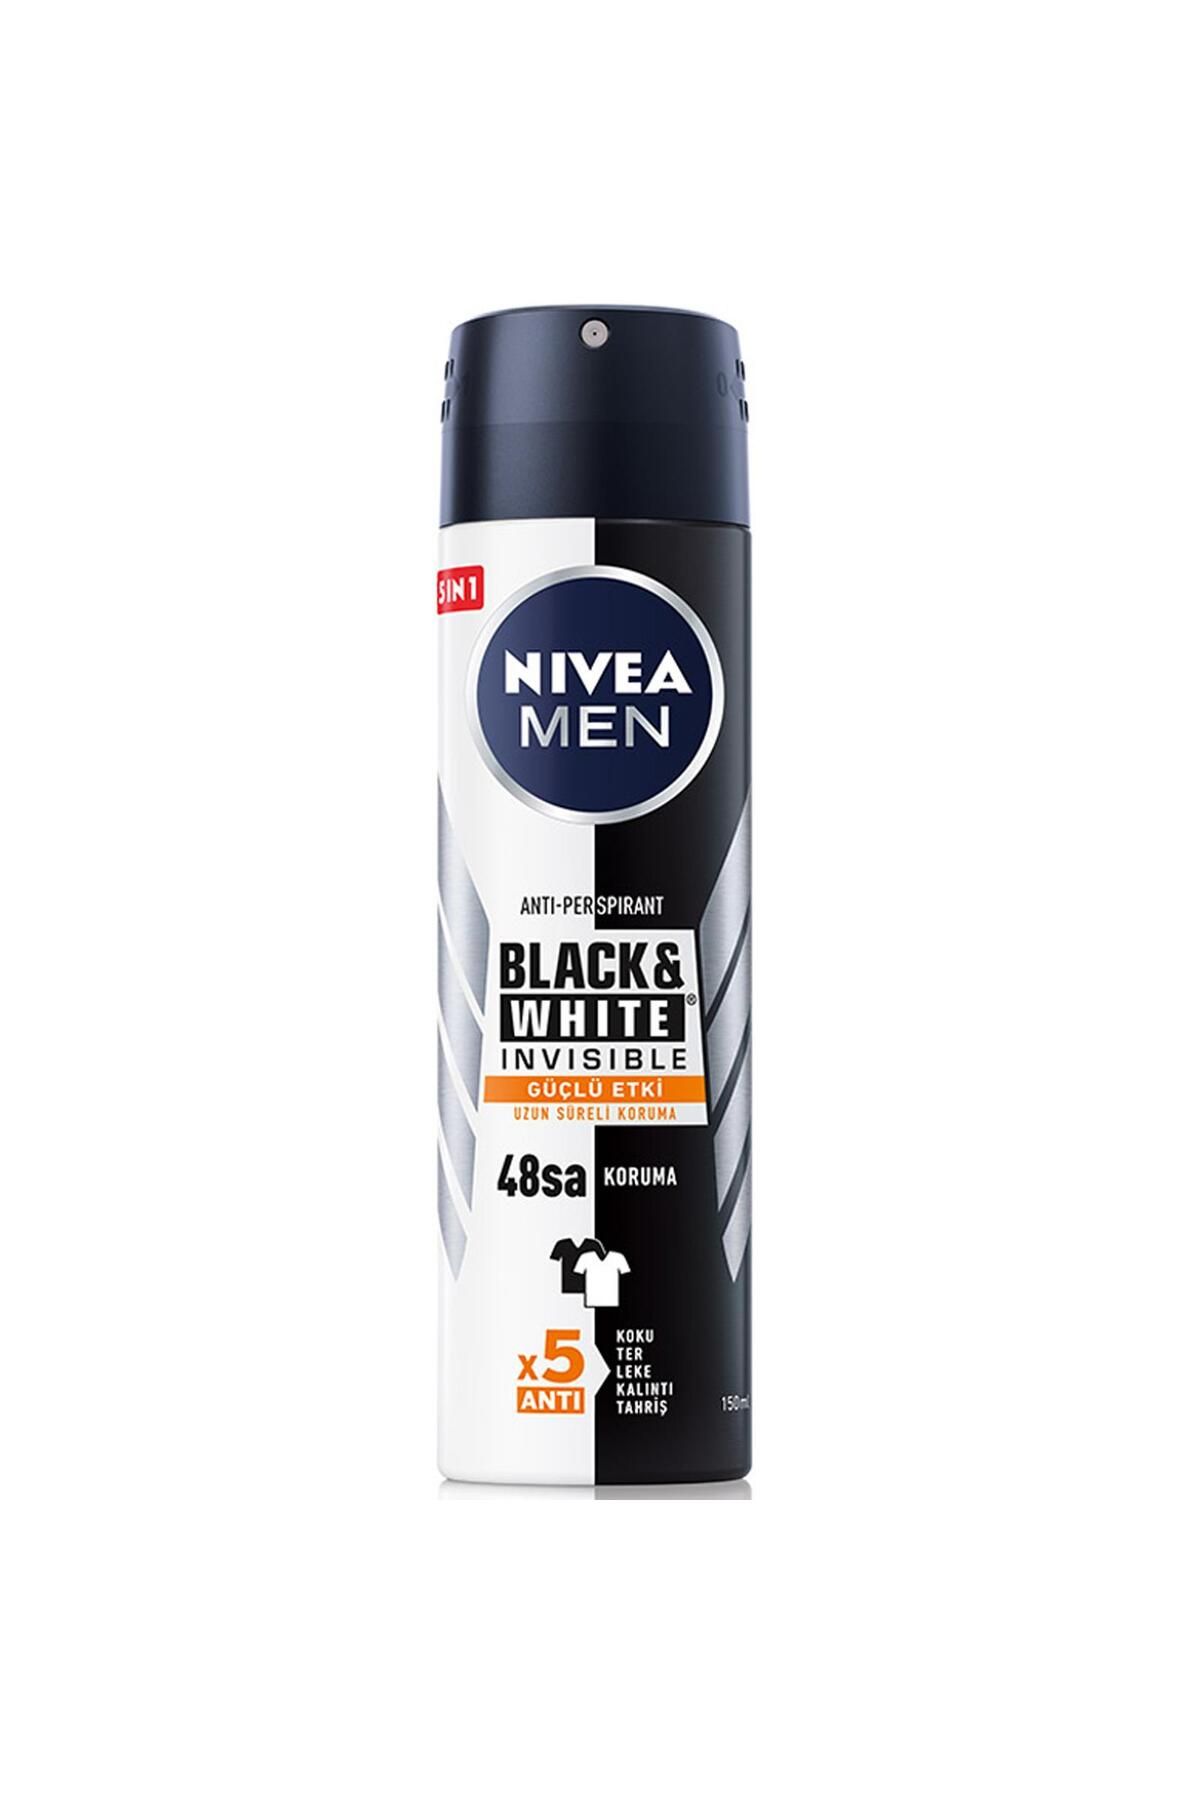 NIVEA Men Black White Invisible Güçlü Etki Erkek Deodorant Sprey 150 ml